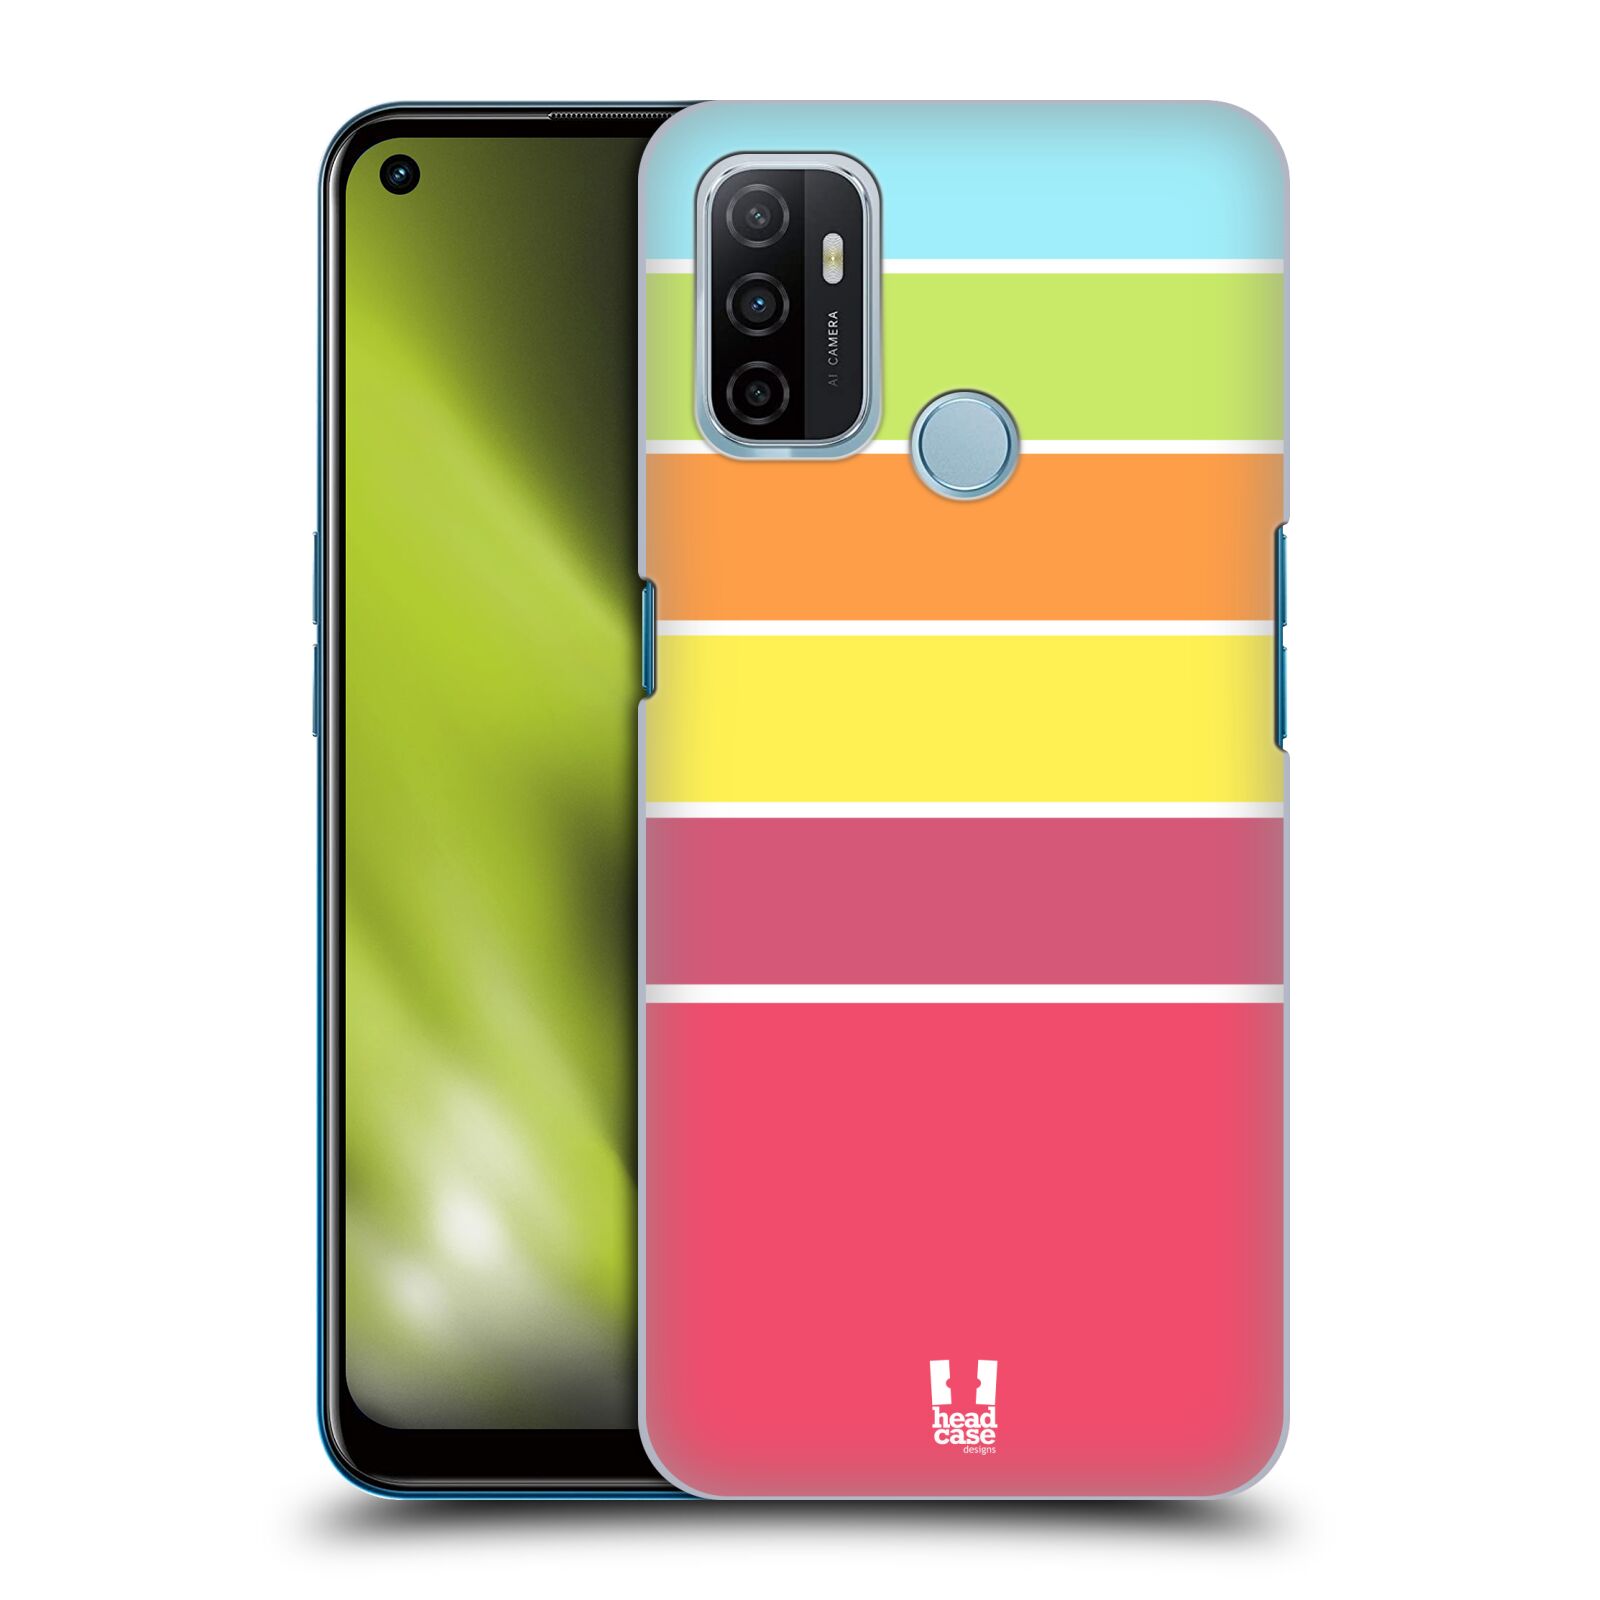 Zadní obal pro mobil Oppo A53 / A53s - HEAD CASE - barevné pruhy růžová, oranžová